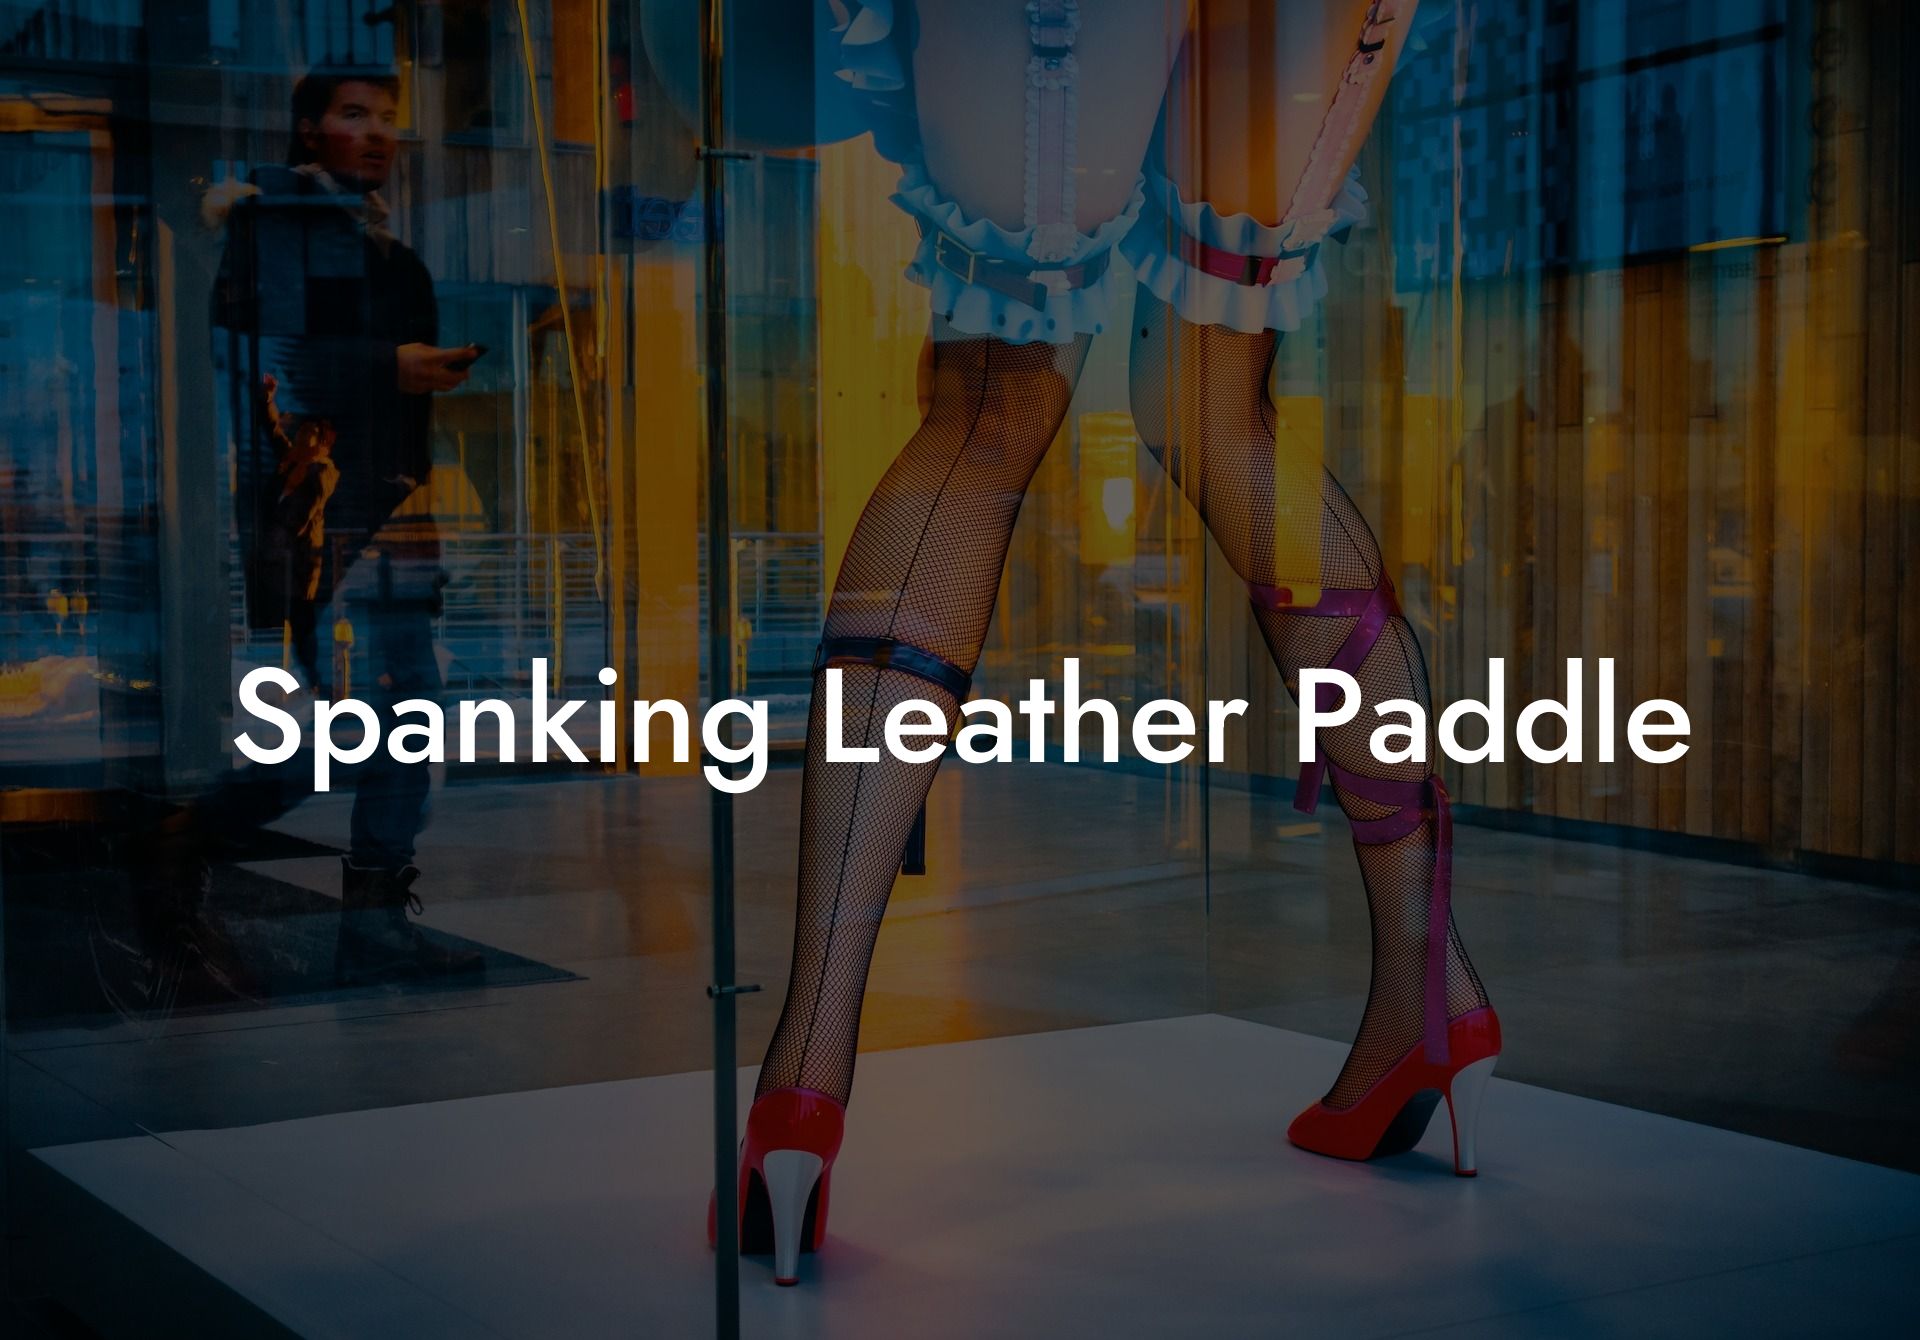 Spanking Leather Paddle